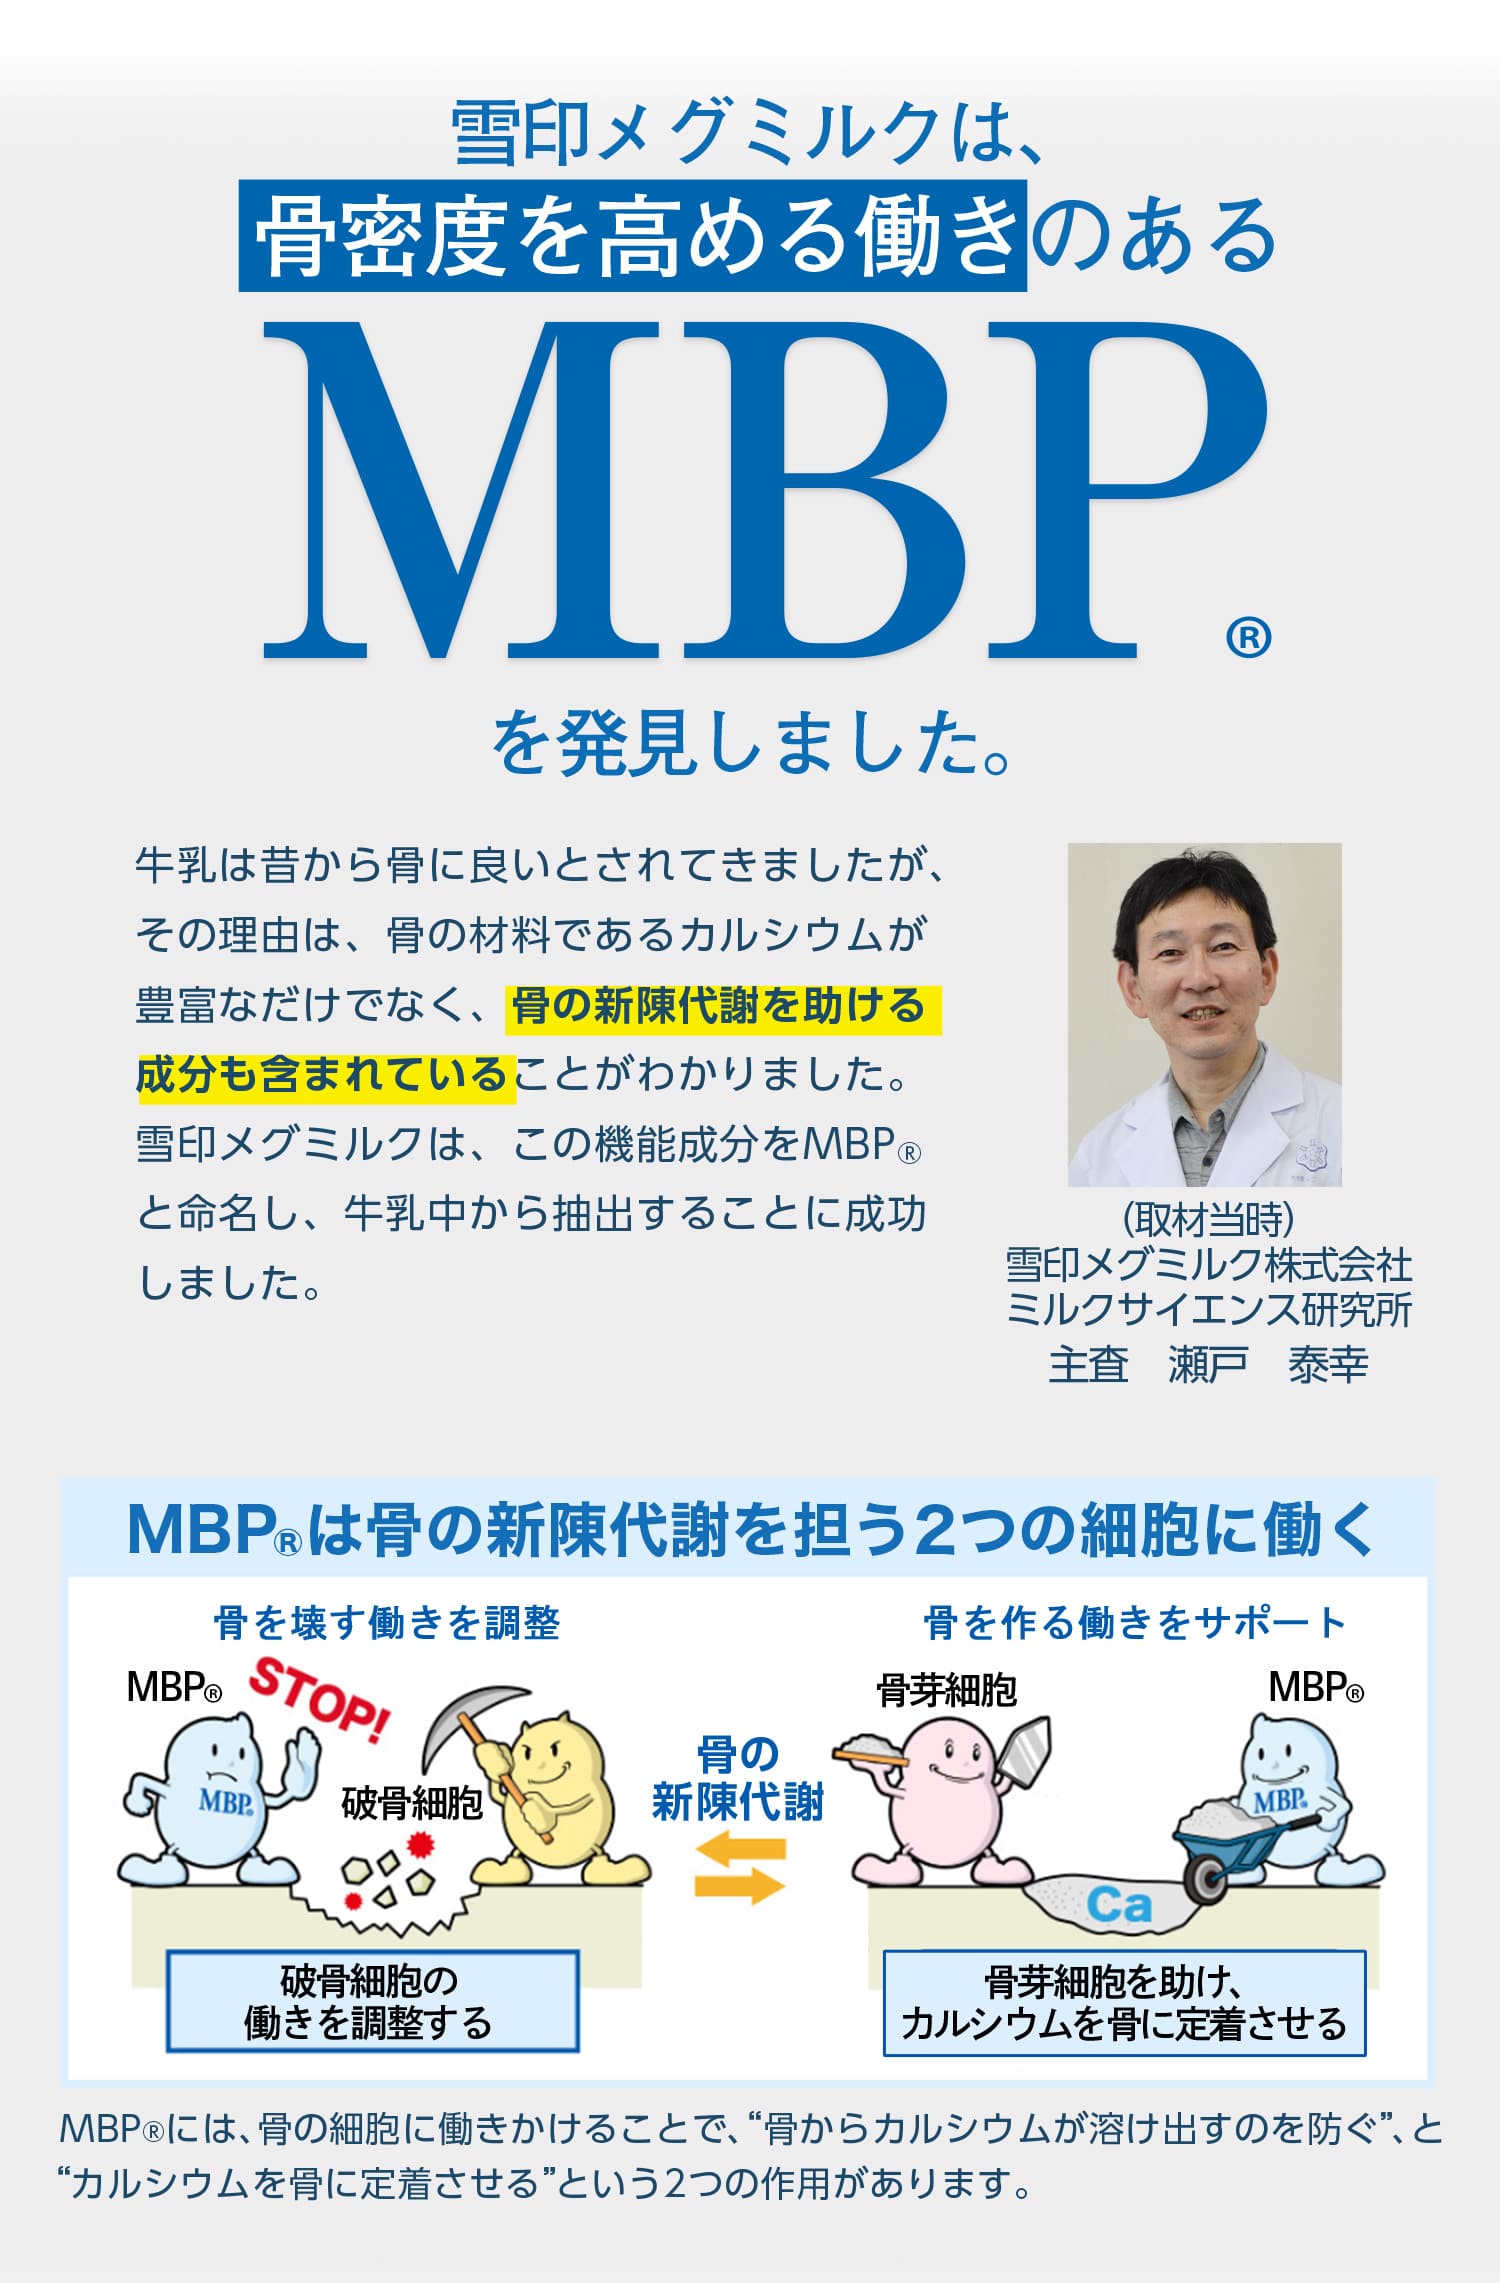 雪印メグミルクは、骨密度を高める働きのあるMBP(R)を発見しました。MBP(R)は骨の新陳代謝を促進する2つの細胞に働く